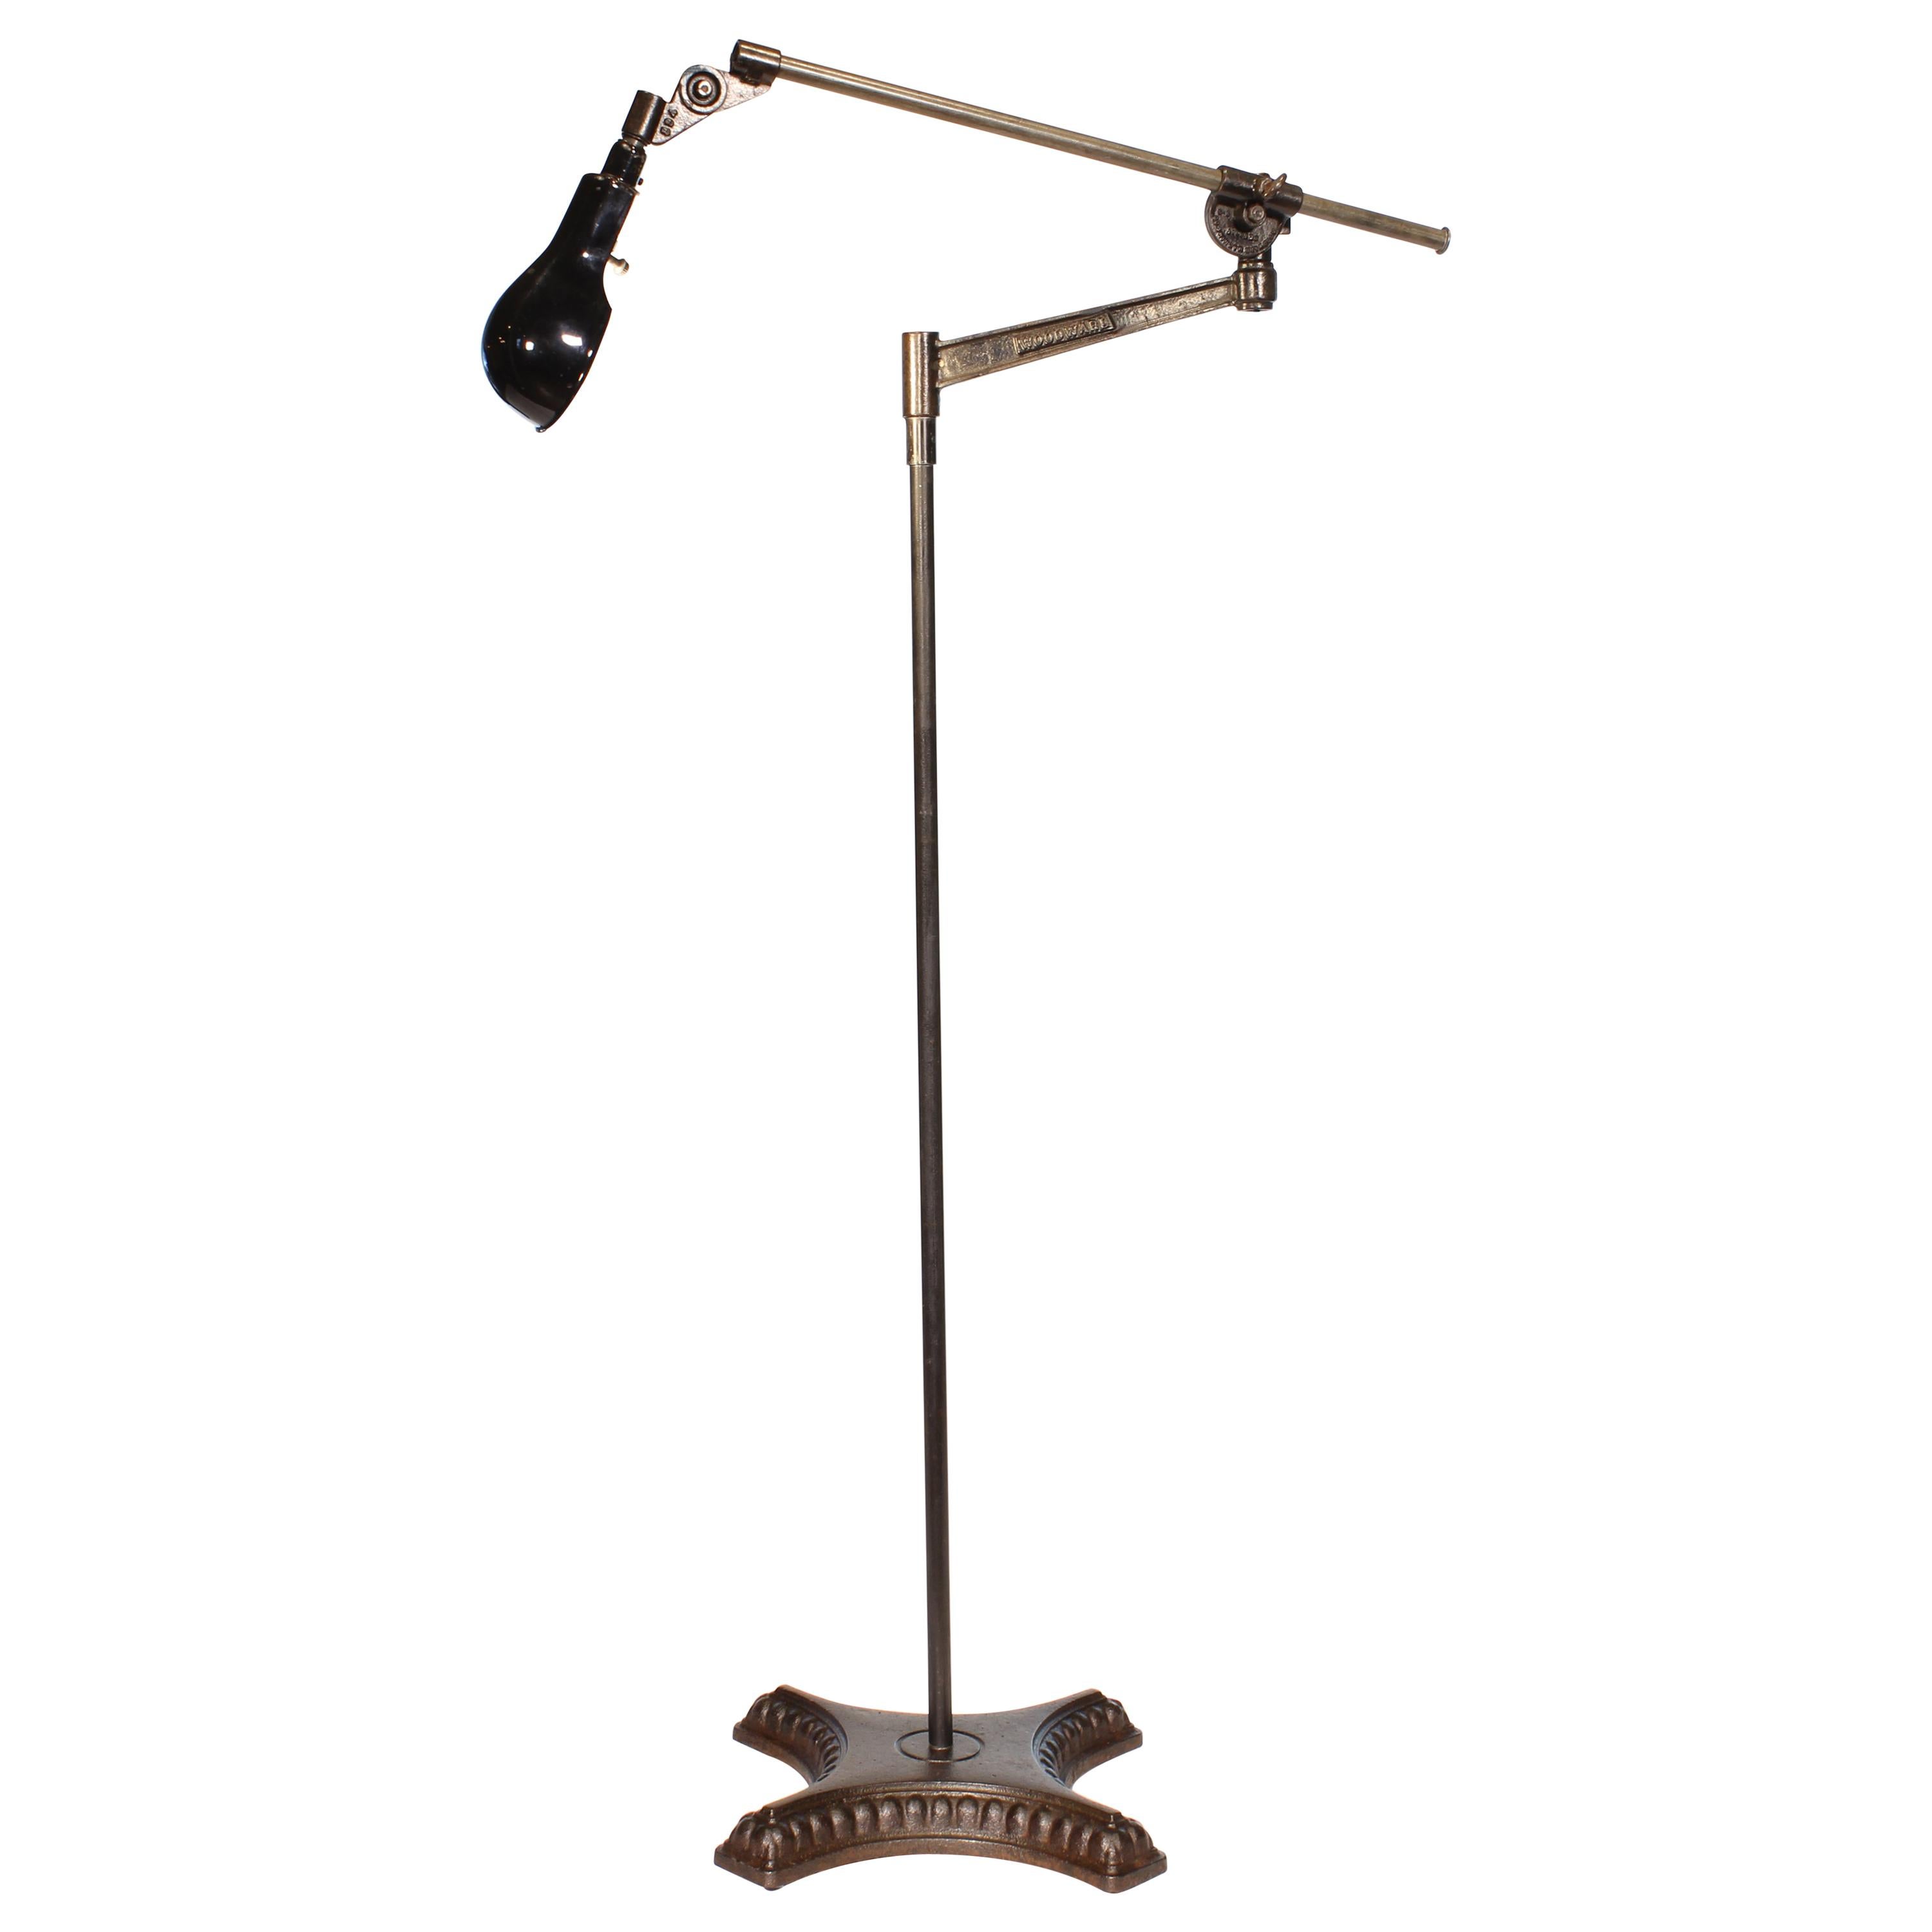 Vintage Industrial Adjustable Floor Lamp "Black Beauty"